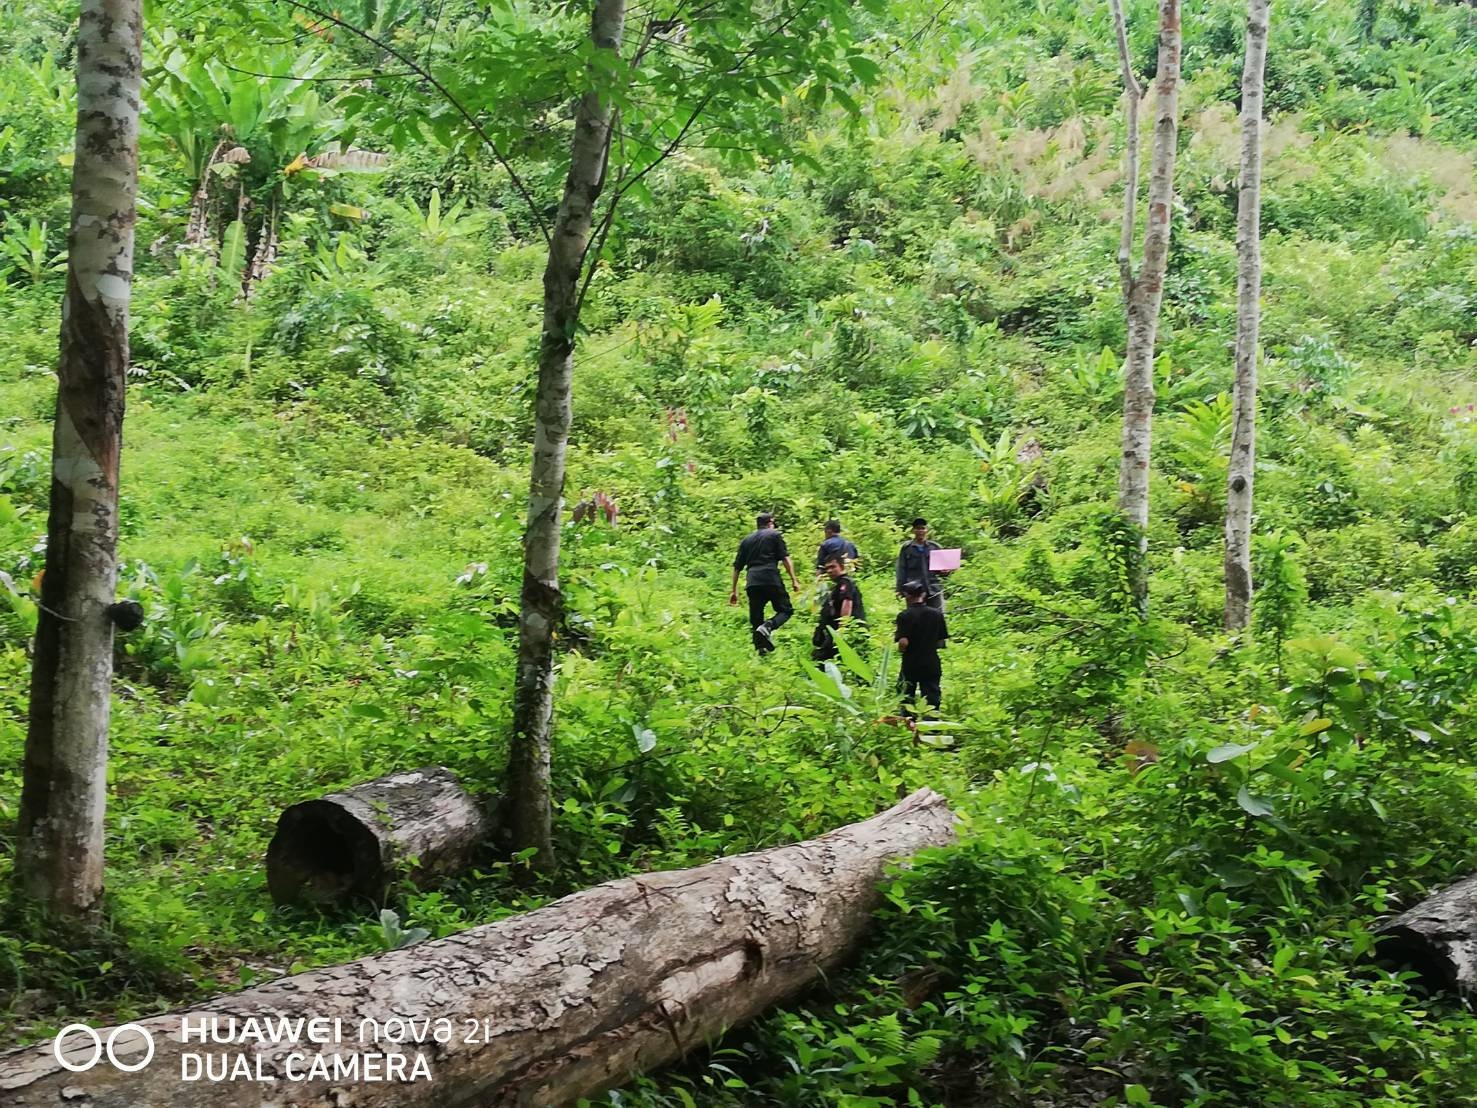 สำนักจัดการทรัพยากรป่าไม้ที่ 13 (สงขลา) โดยหน่วยป้องกันรักษาป่าที่ สต.1 (ทุ่งนุ้ย) ได้ออกลาดตระเวนตรวจปราบปรามการกระทำผิดกฏหมายว่าด้วยการป่าไม้